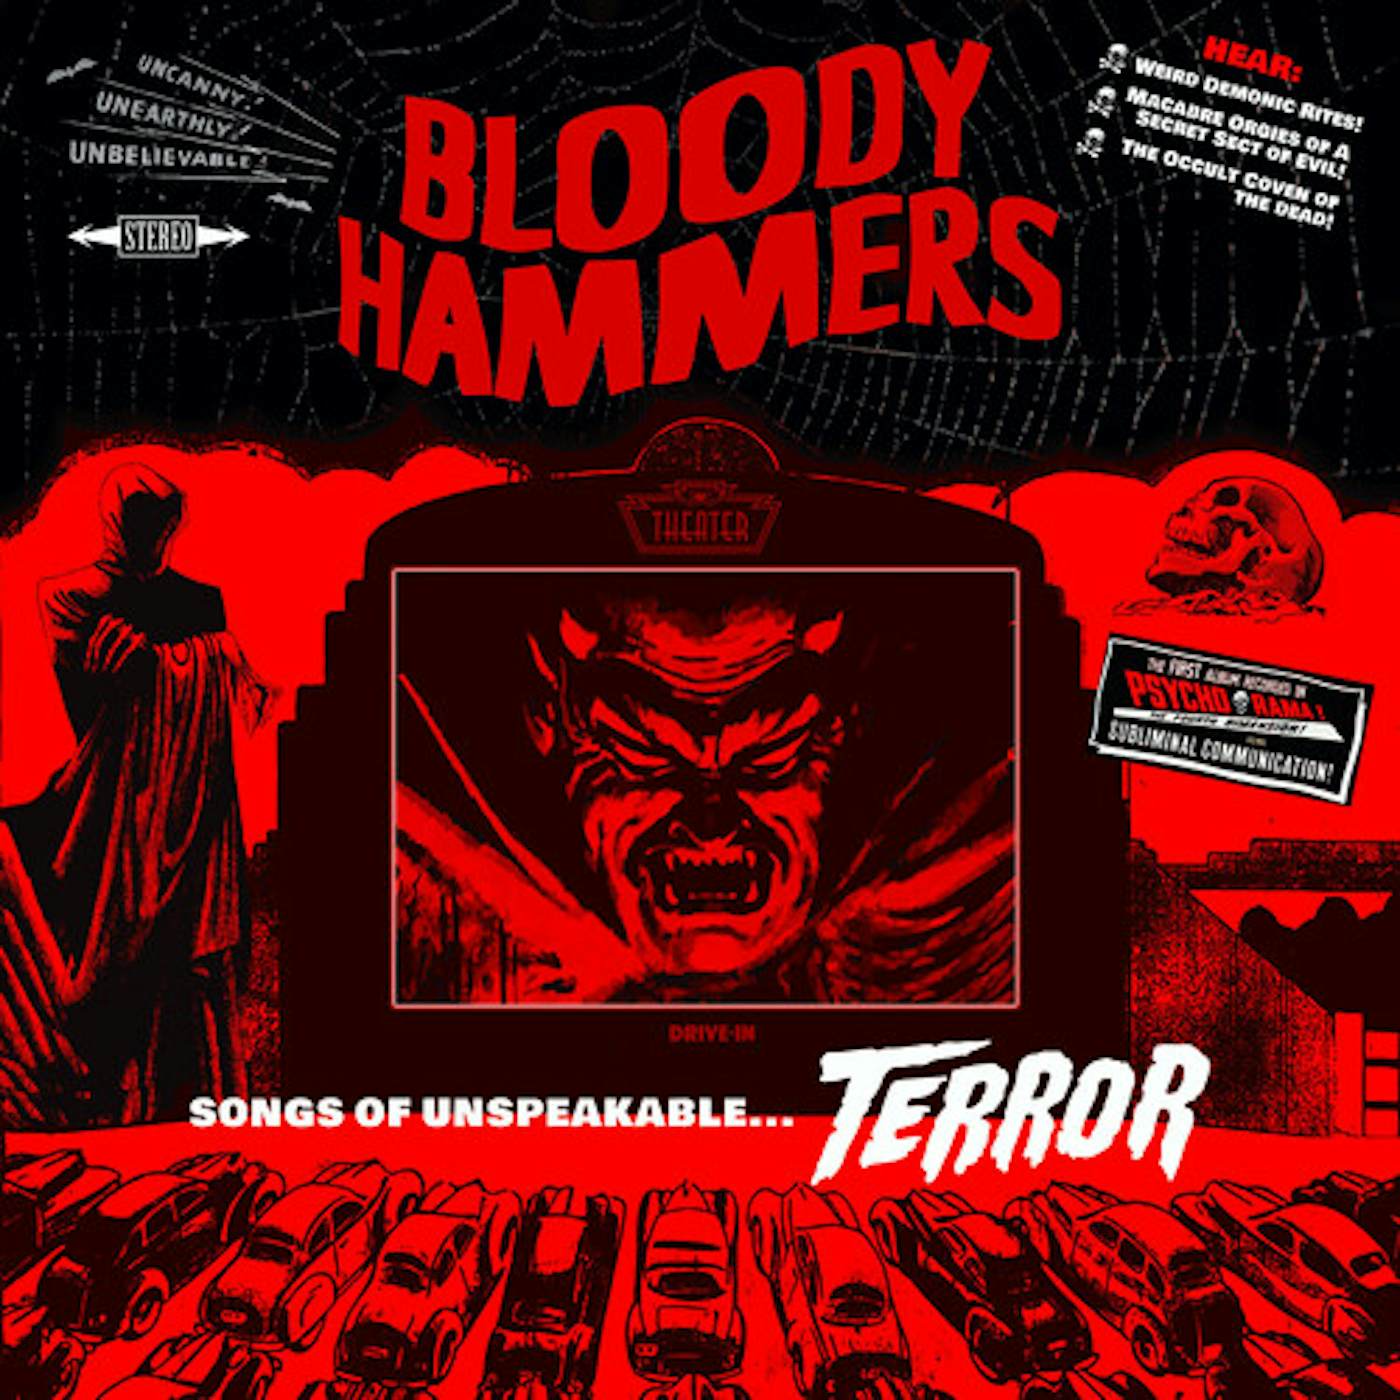 Bloody Hammers Songs Of Unspeakable Terror Vinyl Record